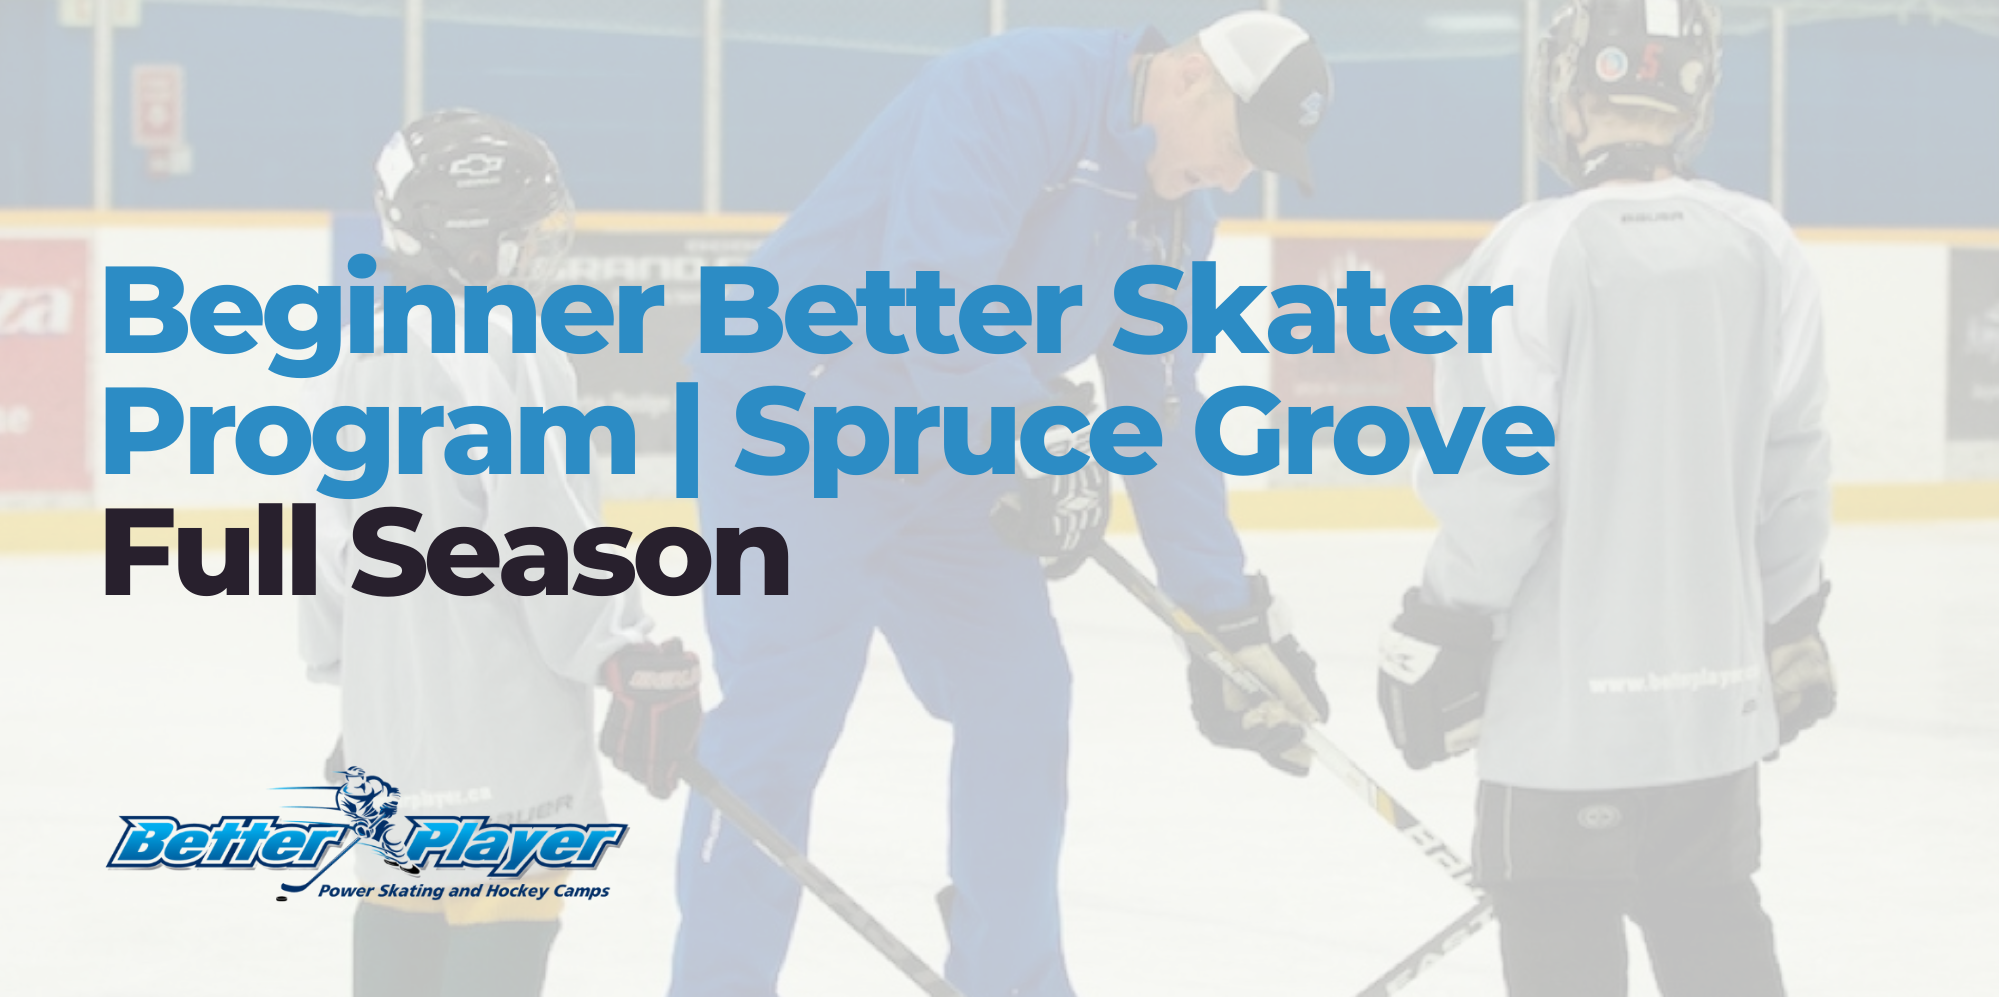 Beginner Full Season | Better Skater Program Spruce Grove